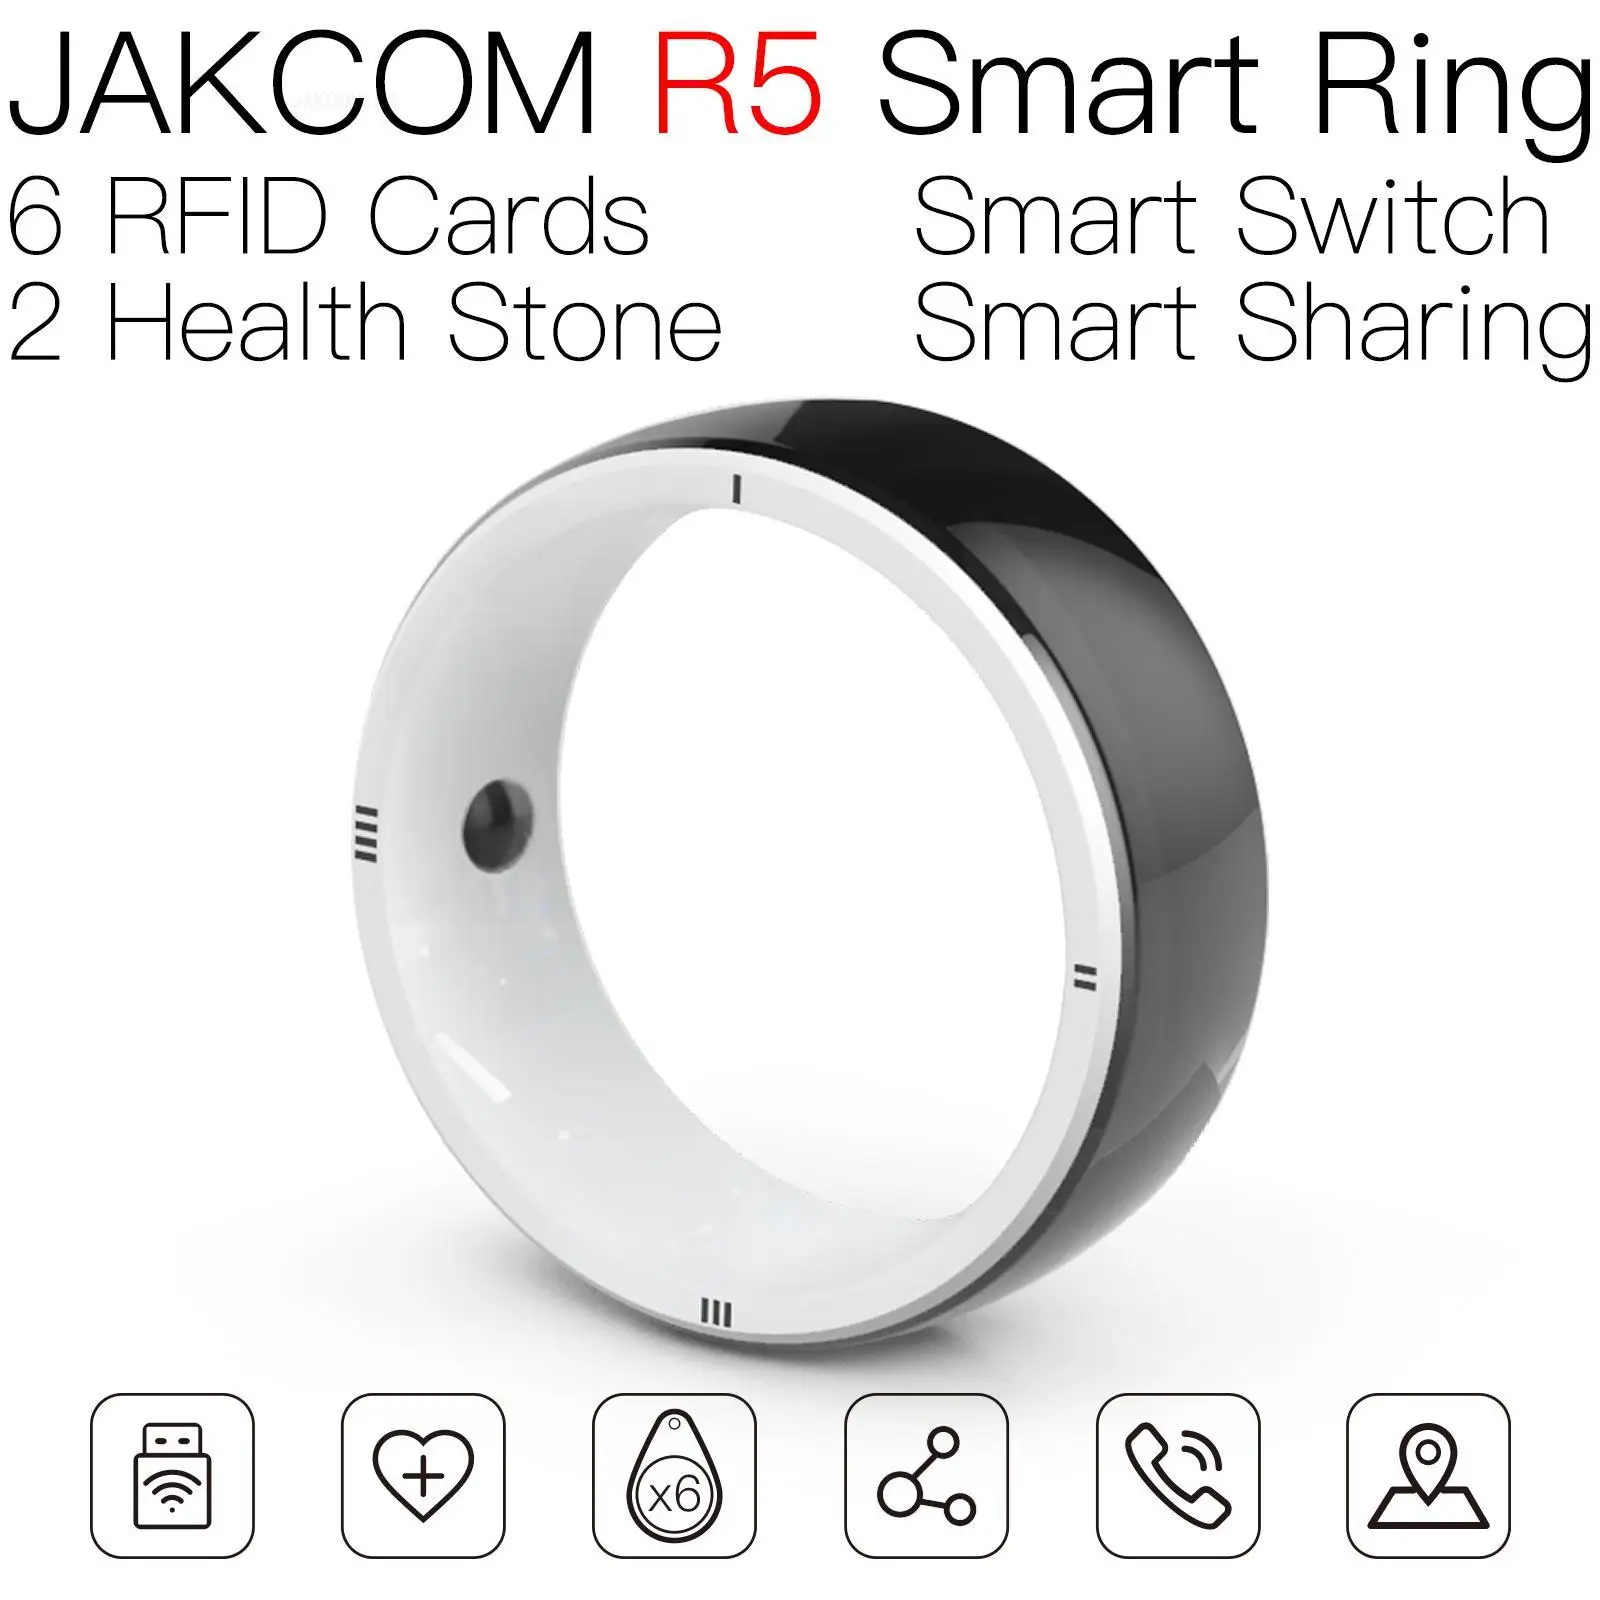 

Умное кольцо JAKCOM R5, позже, чем стандартное устройство для автоматического пуделя, Классический электронный стальной Фидер rfid 1k с возможностью записи